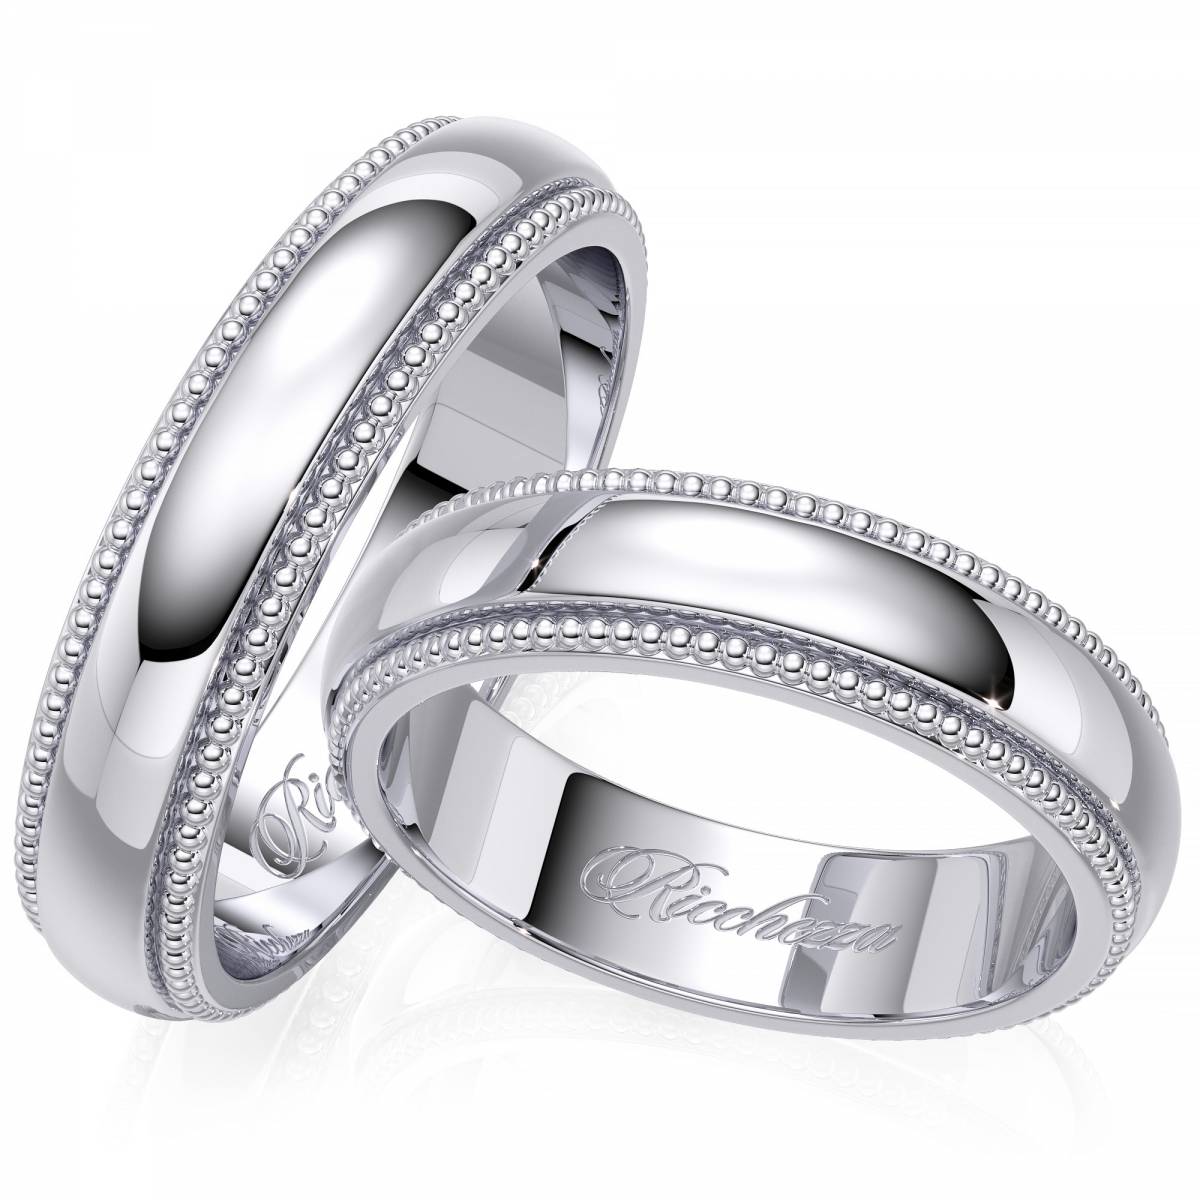 Серебряные обручальные кольца - здравая альтернатива золоту | женский журнал beewoman - мода, красота, отношения, семья